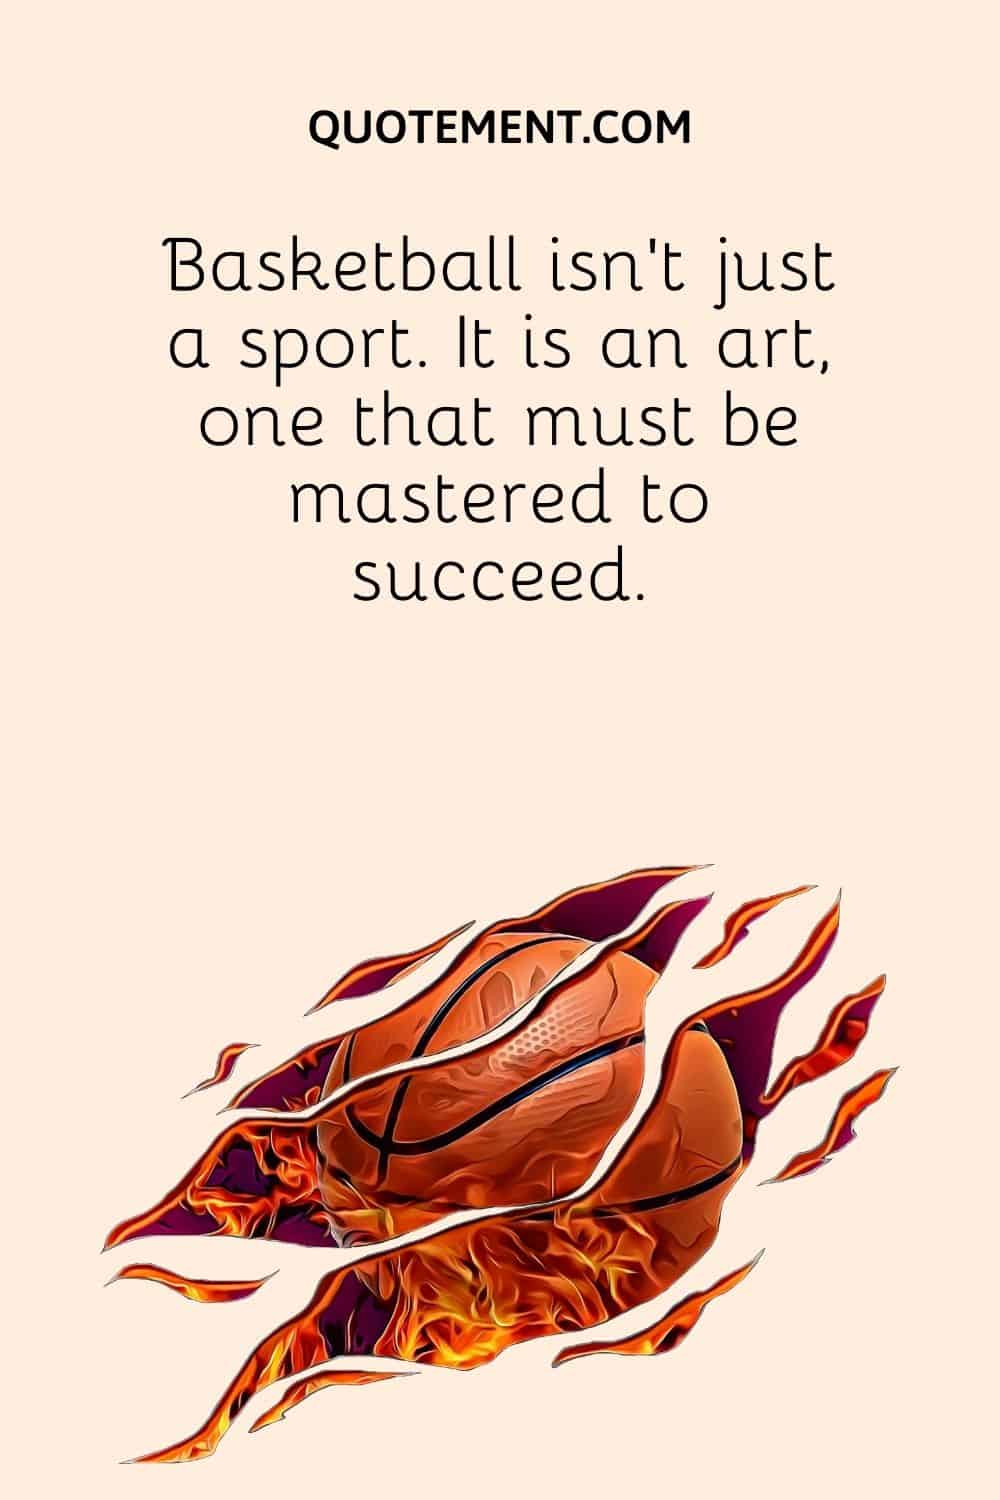 Basketball isn't just a sport. It is an art